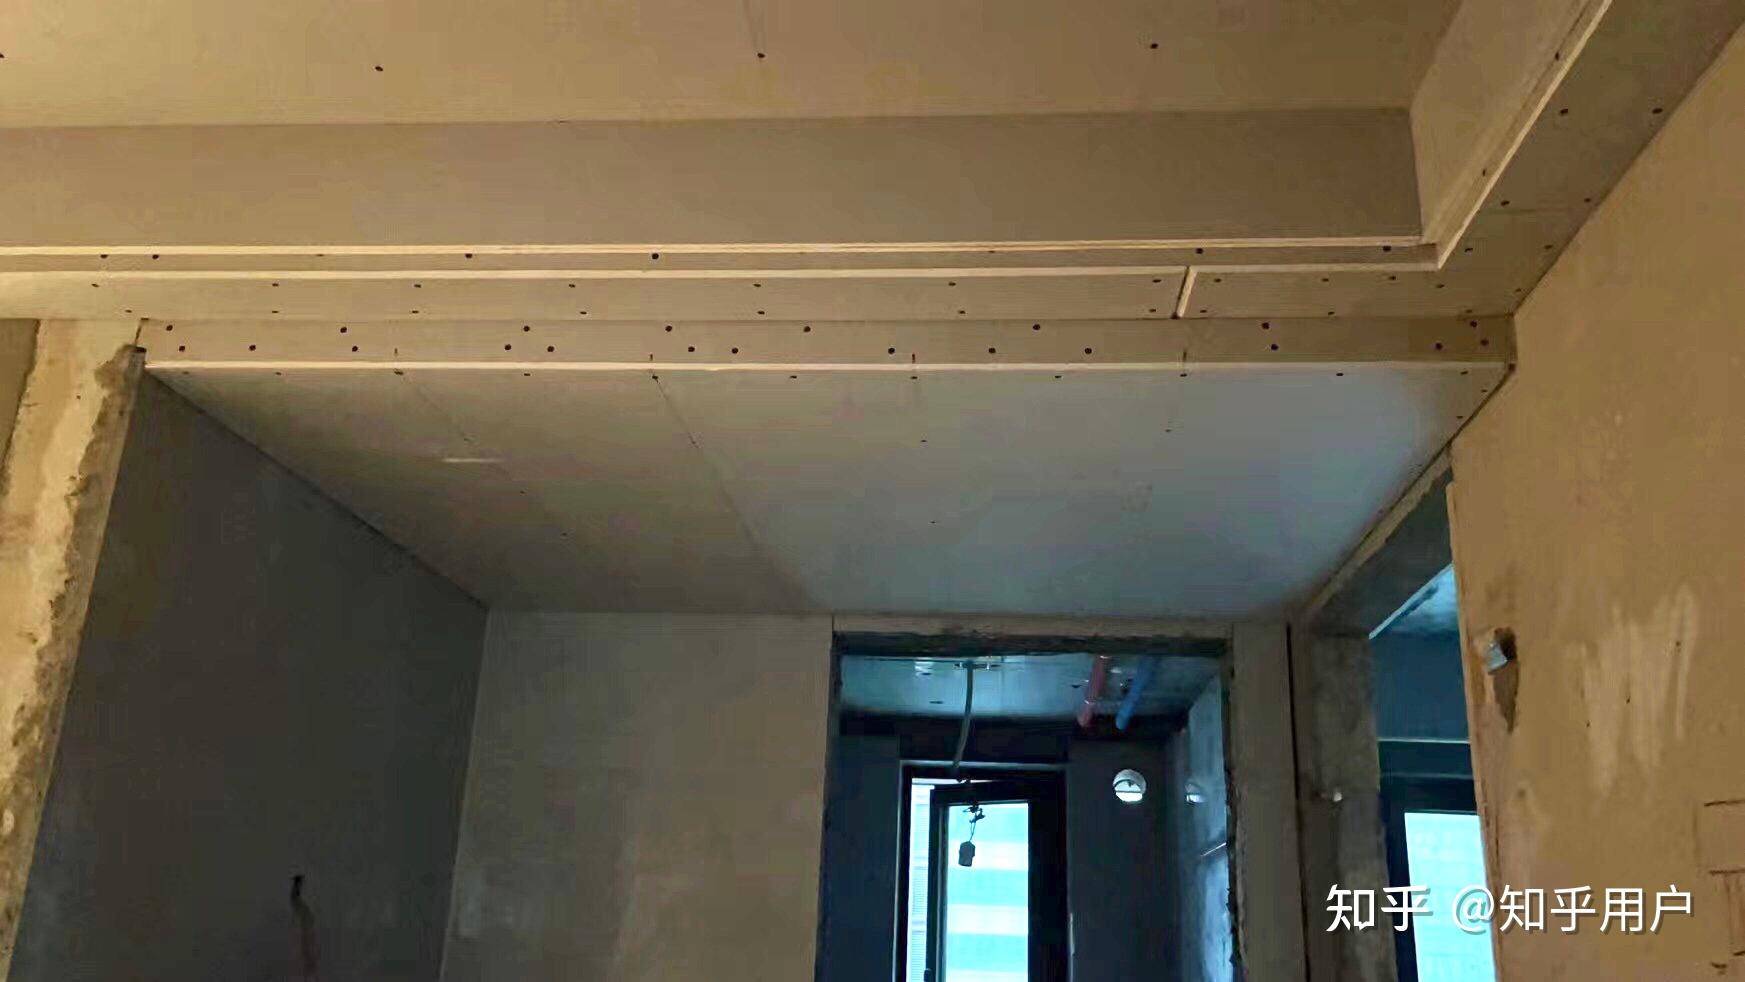 石膏板与方块石膏板连接通用施工图-华建工艺学会